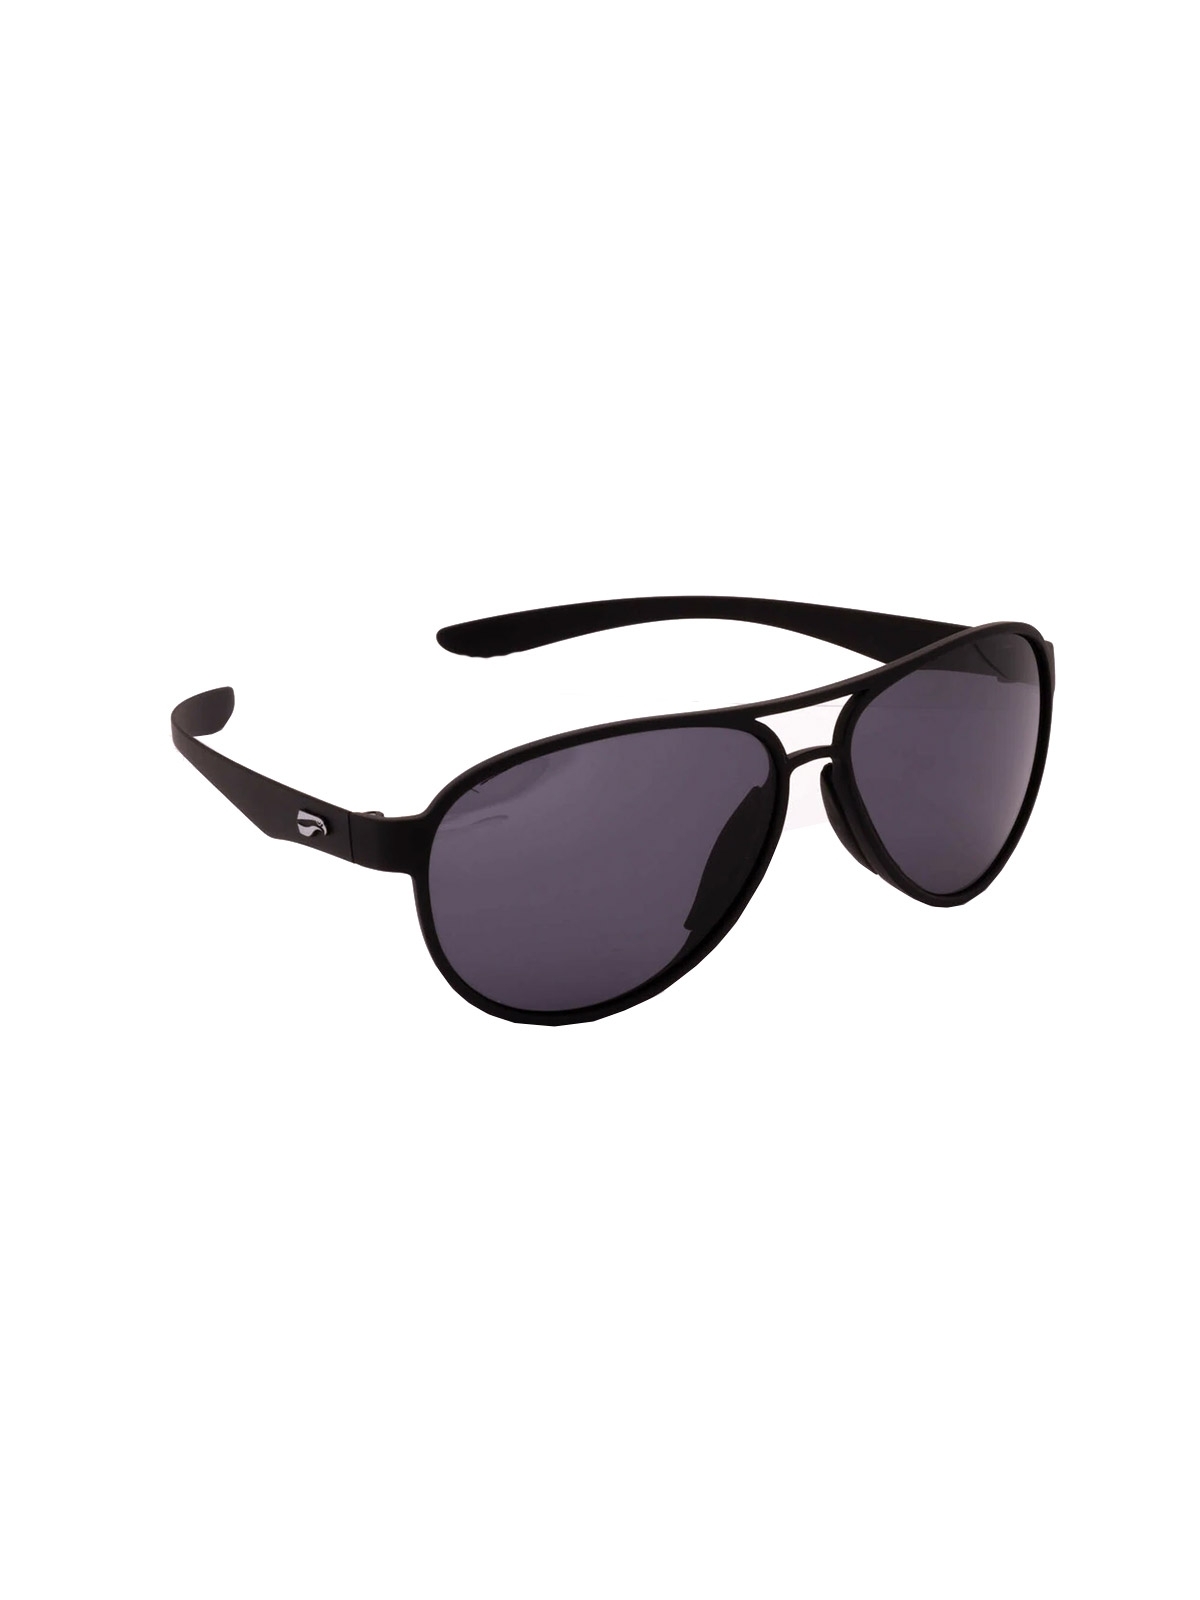 Flying Eyes Sunglasses Kestrel Aviator - Matte Black Frame, Solid Gray Lenses